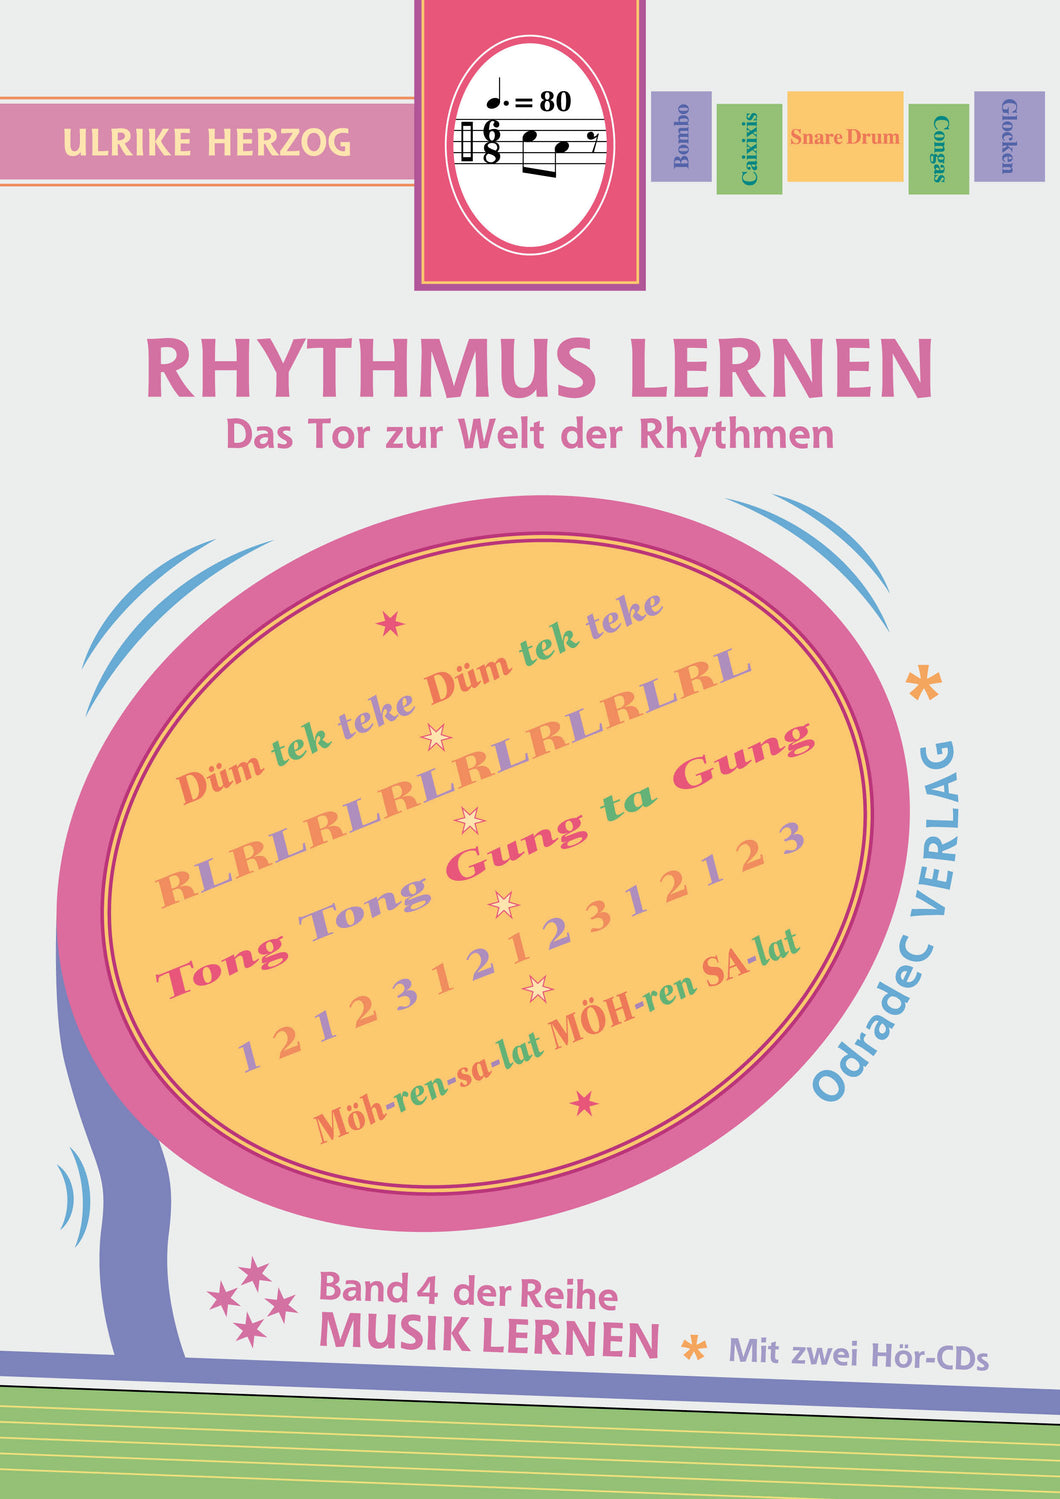 Herzog, Ulrike: Rhythmus lernen. Das Tor zur Welt der Rhythmen (Book). Incl. 2 CDs.